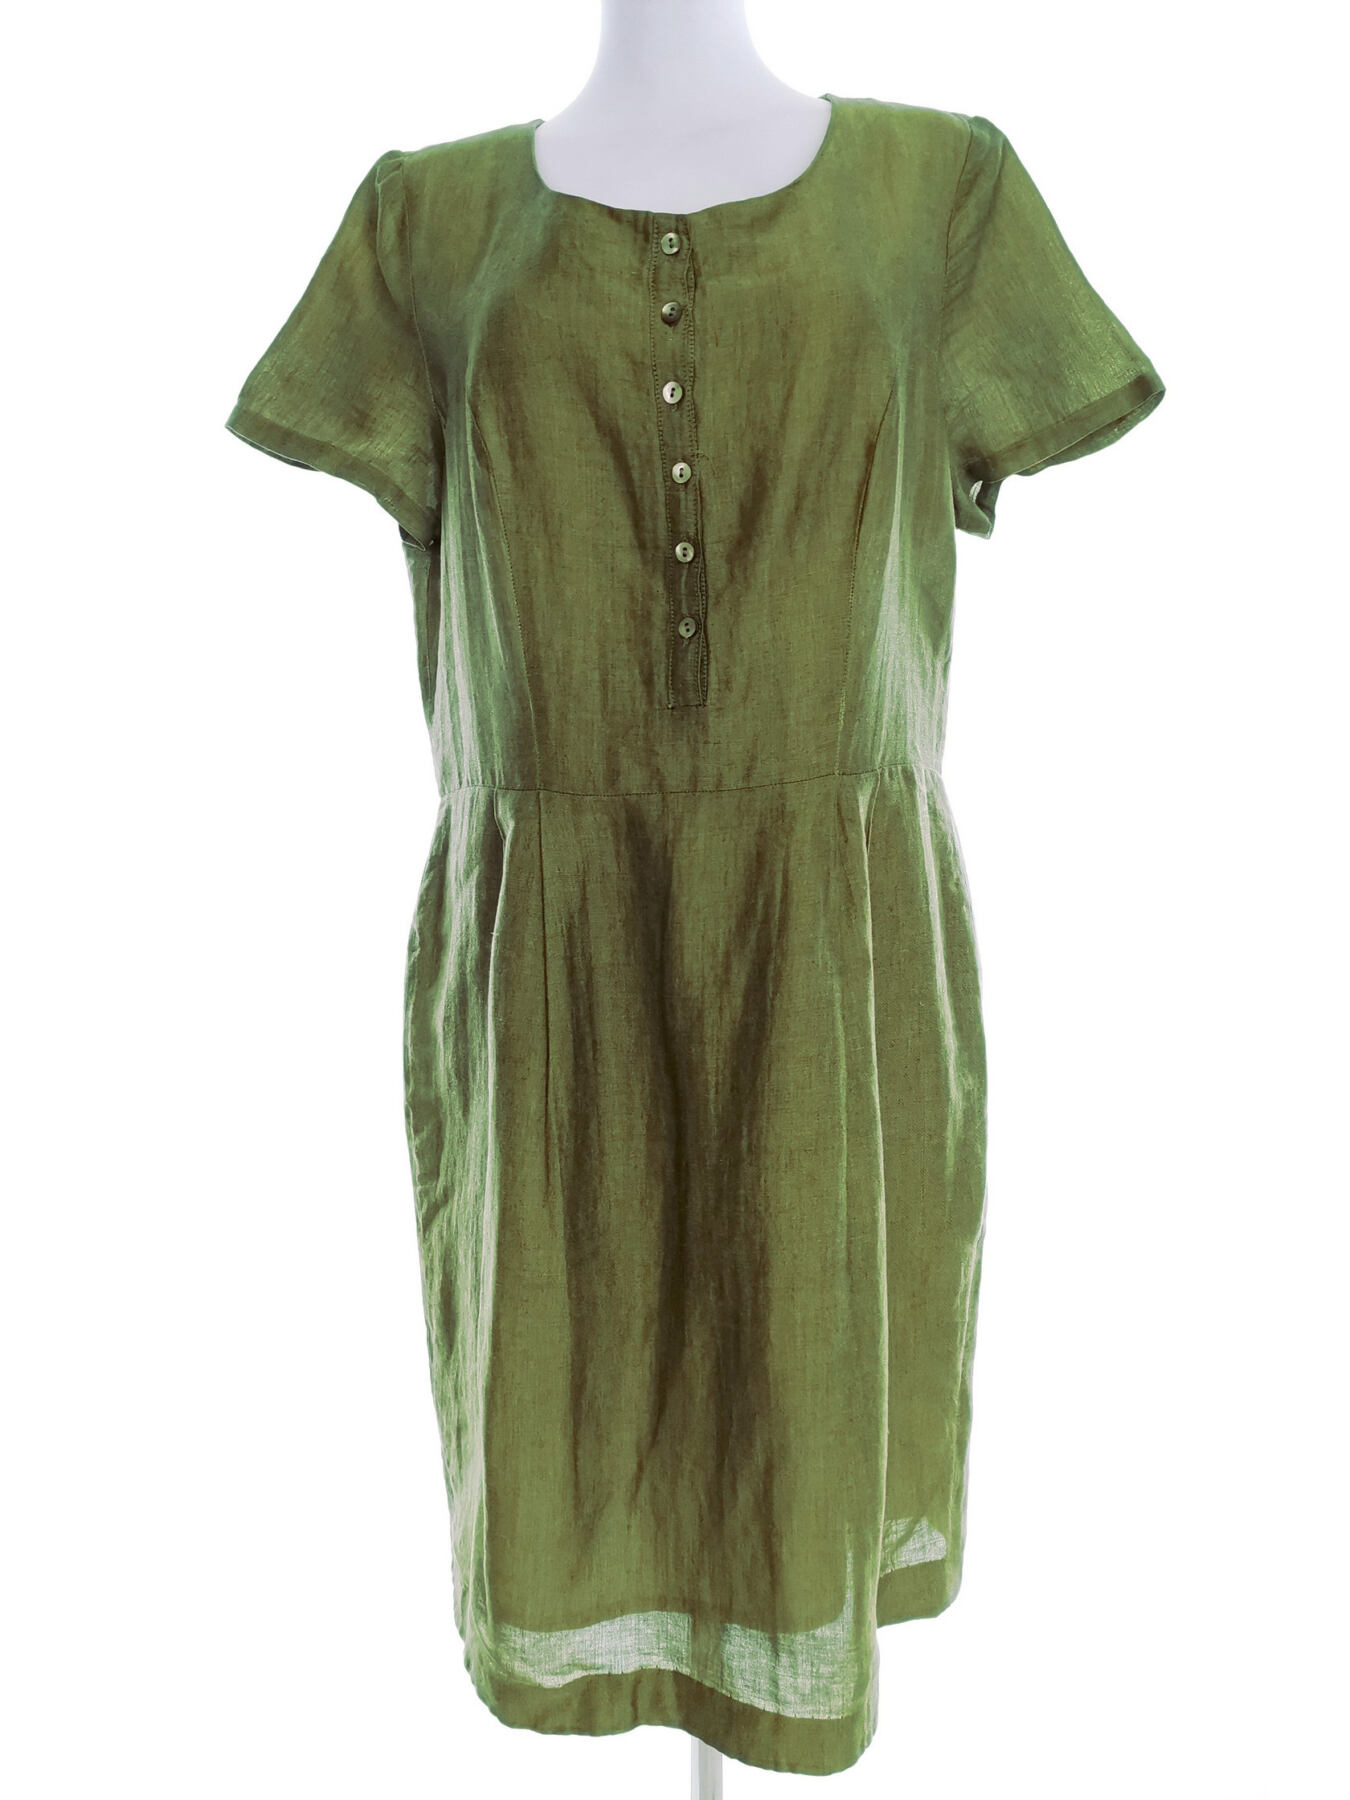 Pret Rozmiar 42 Kolor Zielony Okrągły dekolt Sukienka Koszulowa Krótki rękaw Midi Materiał Len